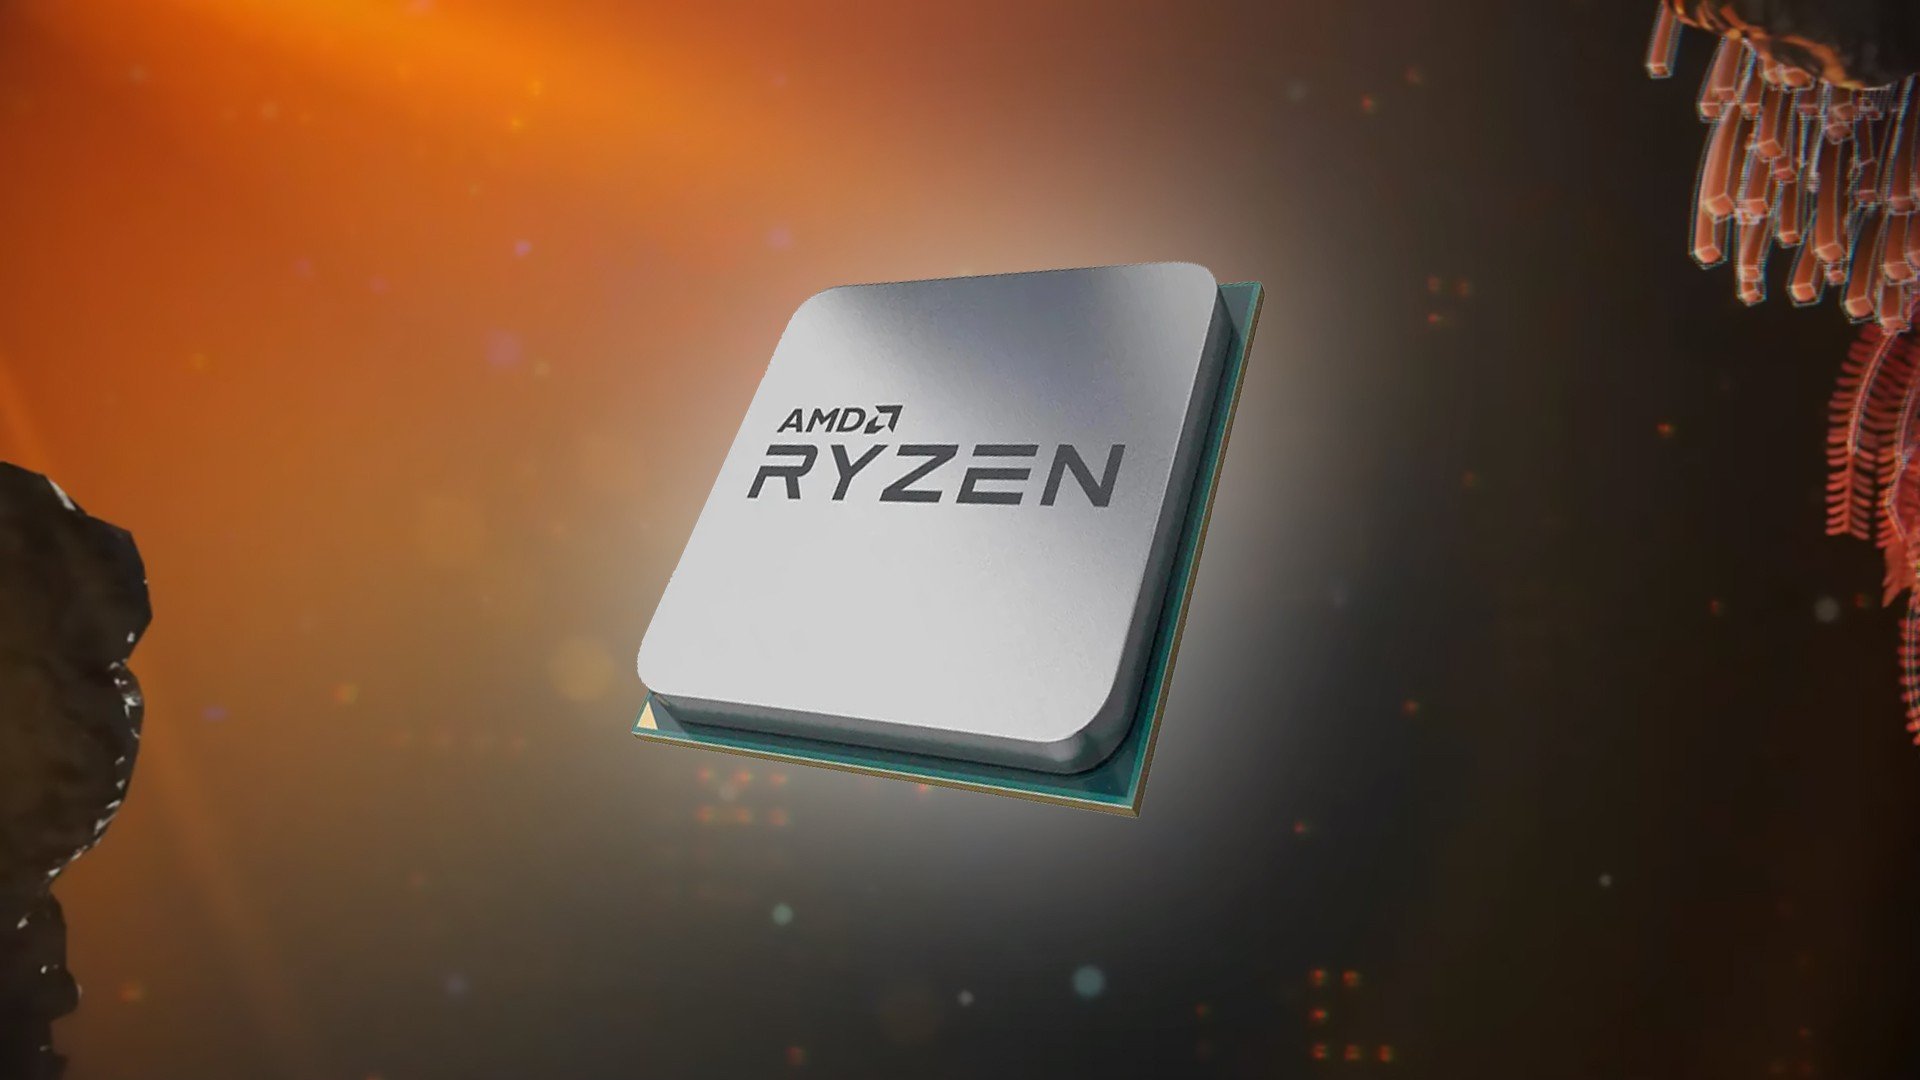 O que esquenta mais AMD ou Intel?